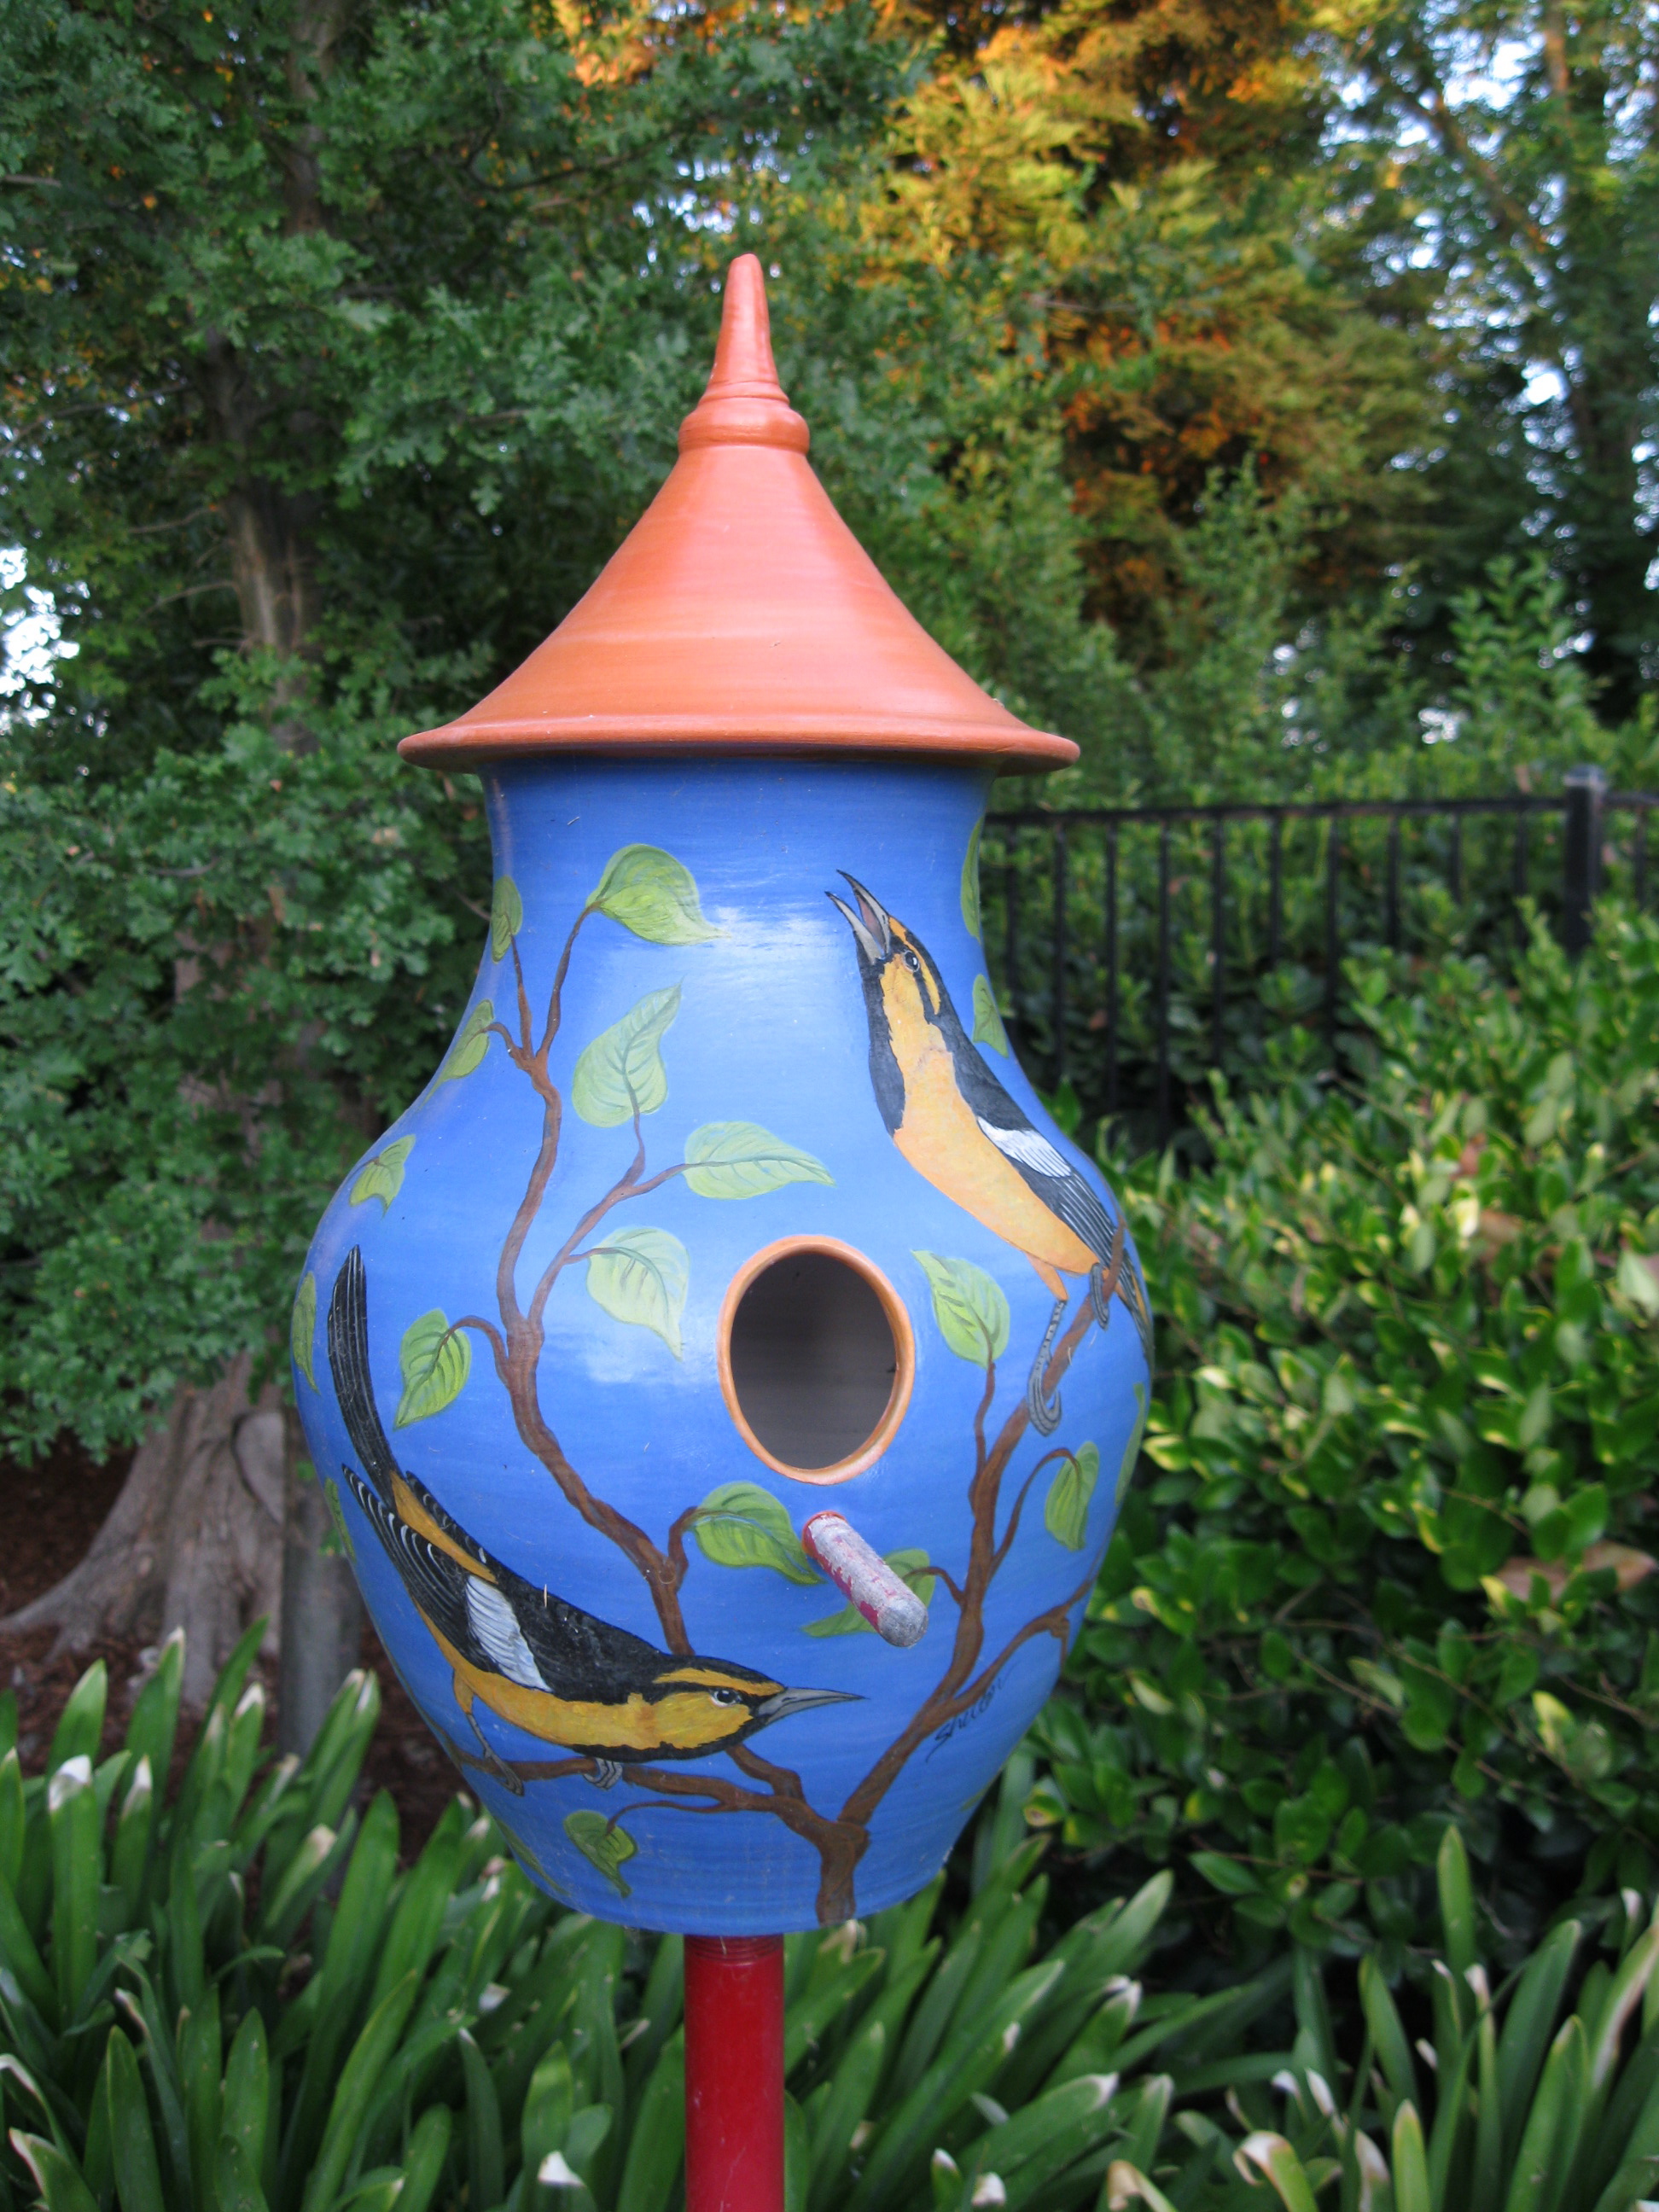 Colorful Ceramic Birdhouse with Oriole design